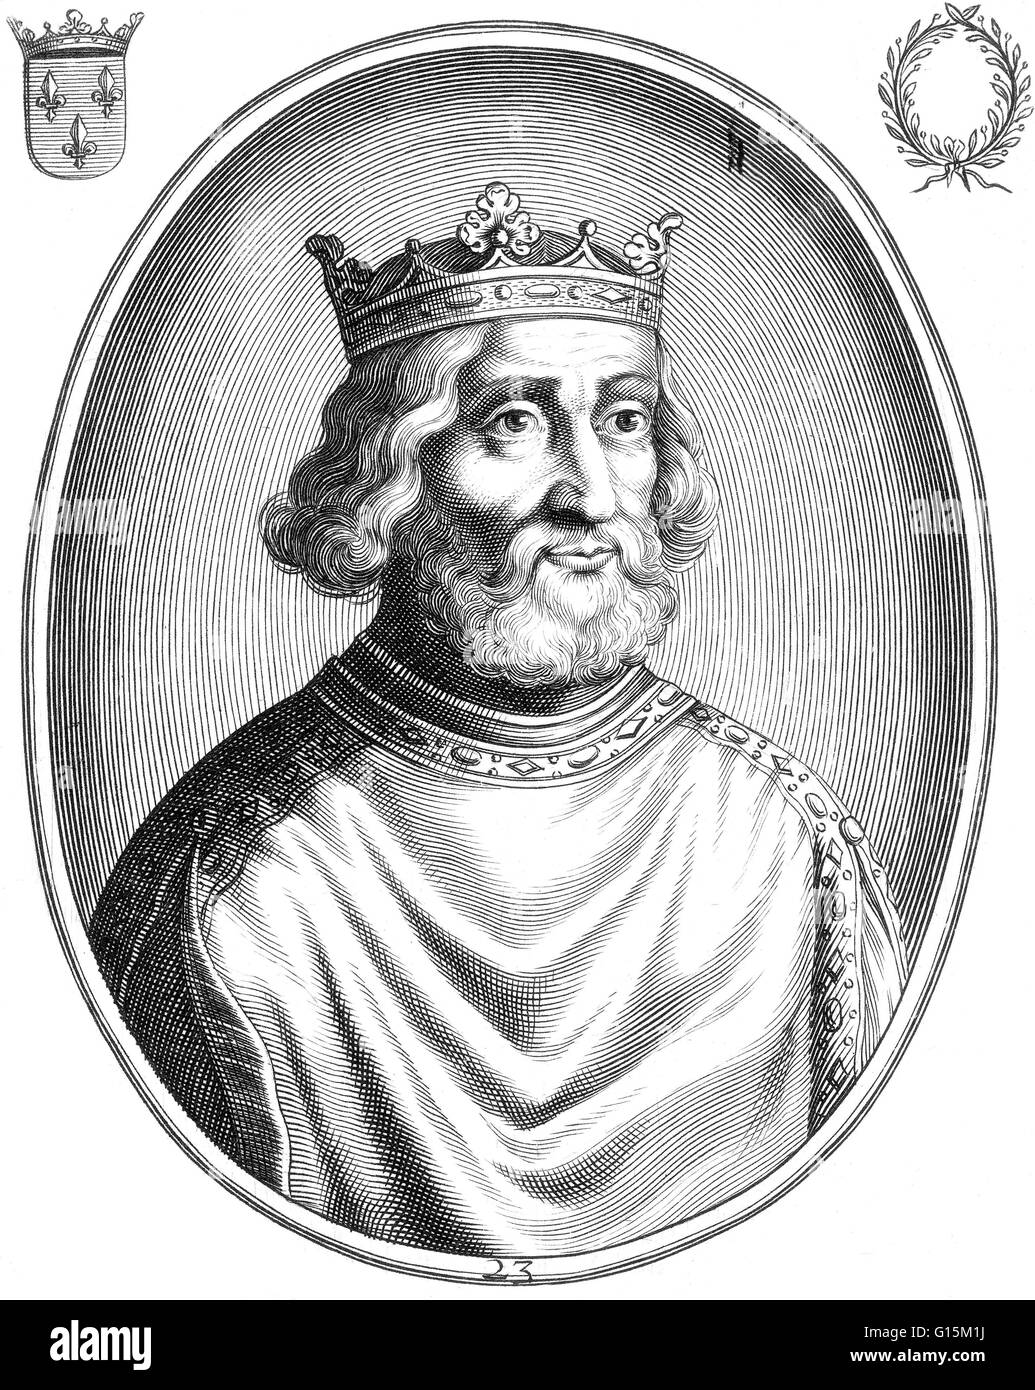 Pipino il Giovane (714-768) è stato il primo re dei Franchi della dinastia carolingia. In 741 lui e suo fratello Carloman riuscito il loro padre Charles Martel, come sindaci del palazzo e de facto sovrani del regno durante un interregno (737-743). Foto Stock